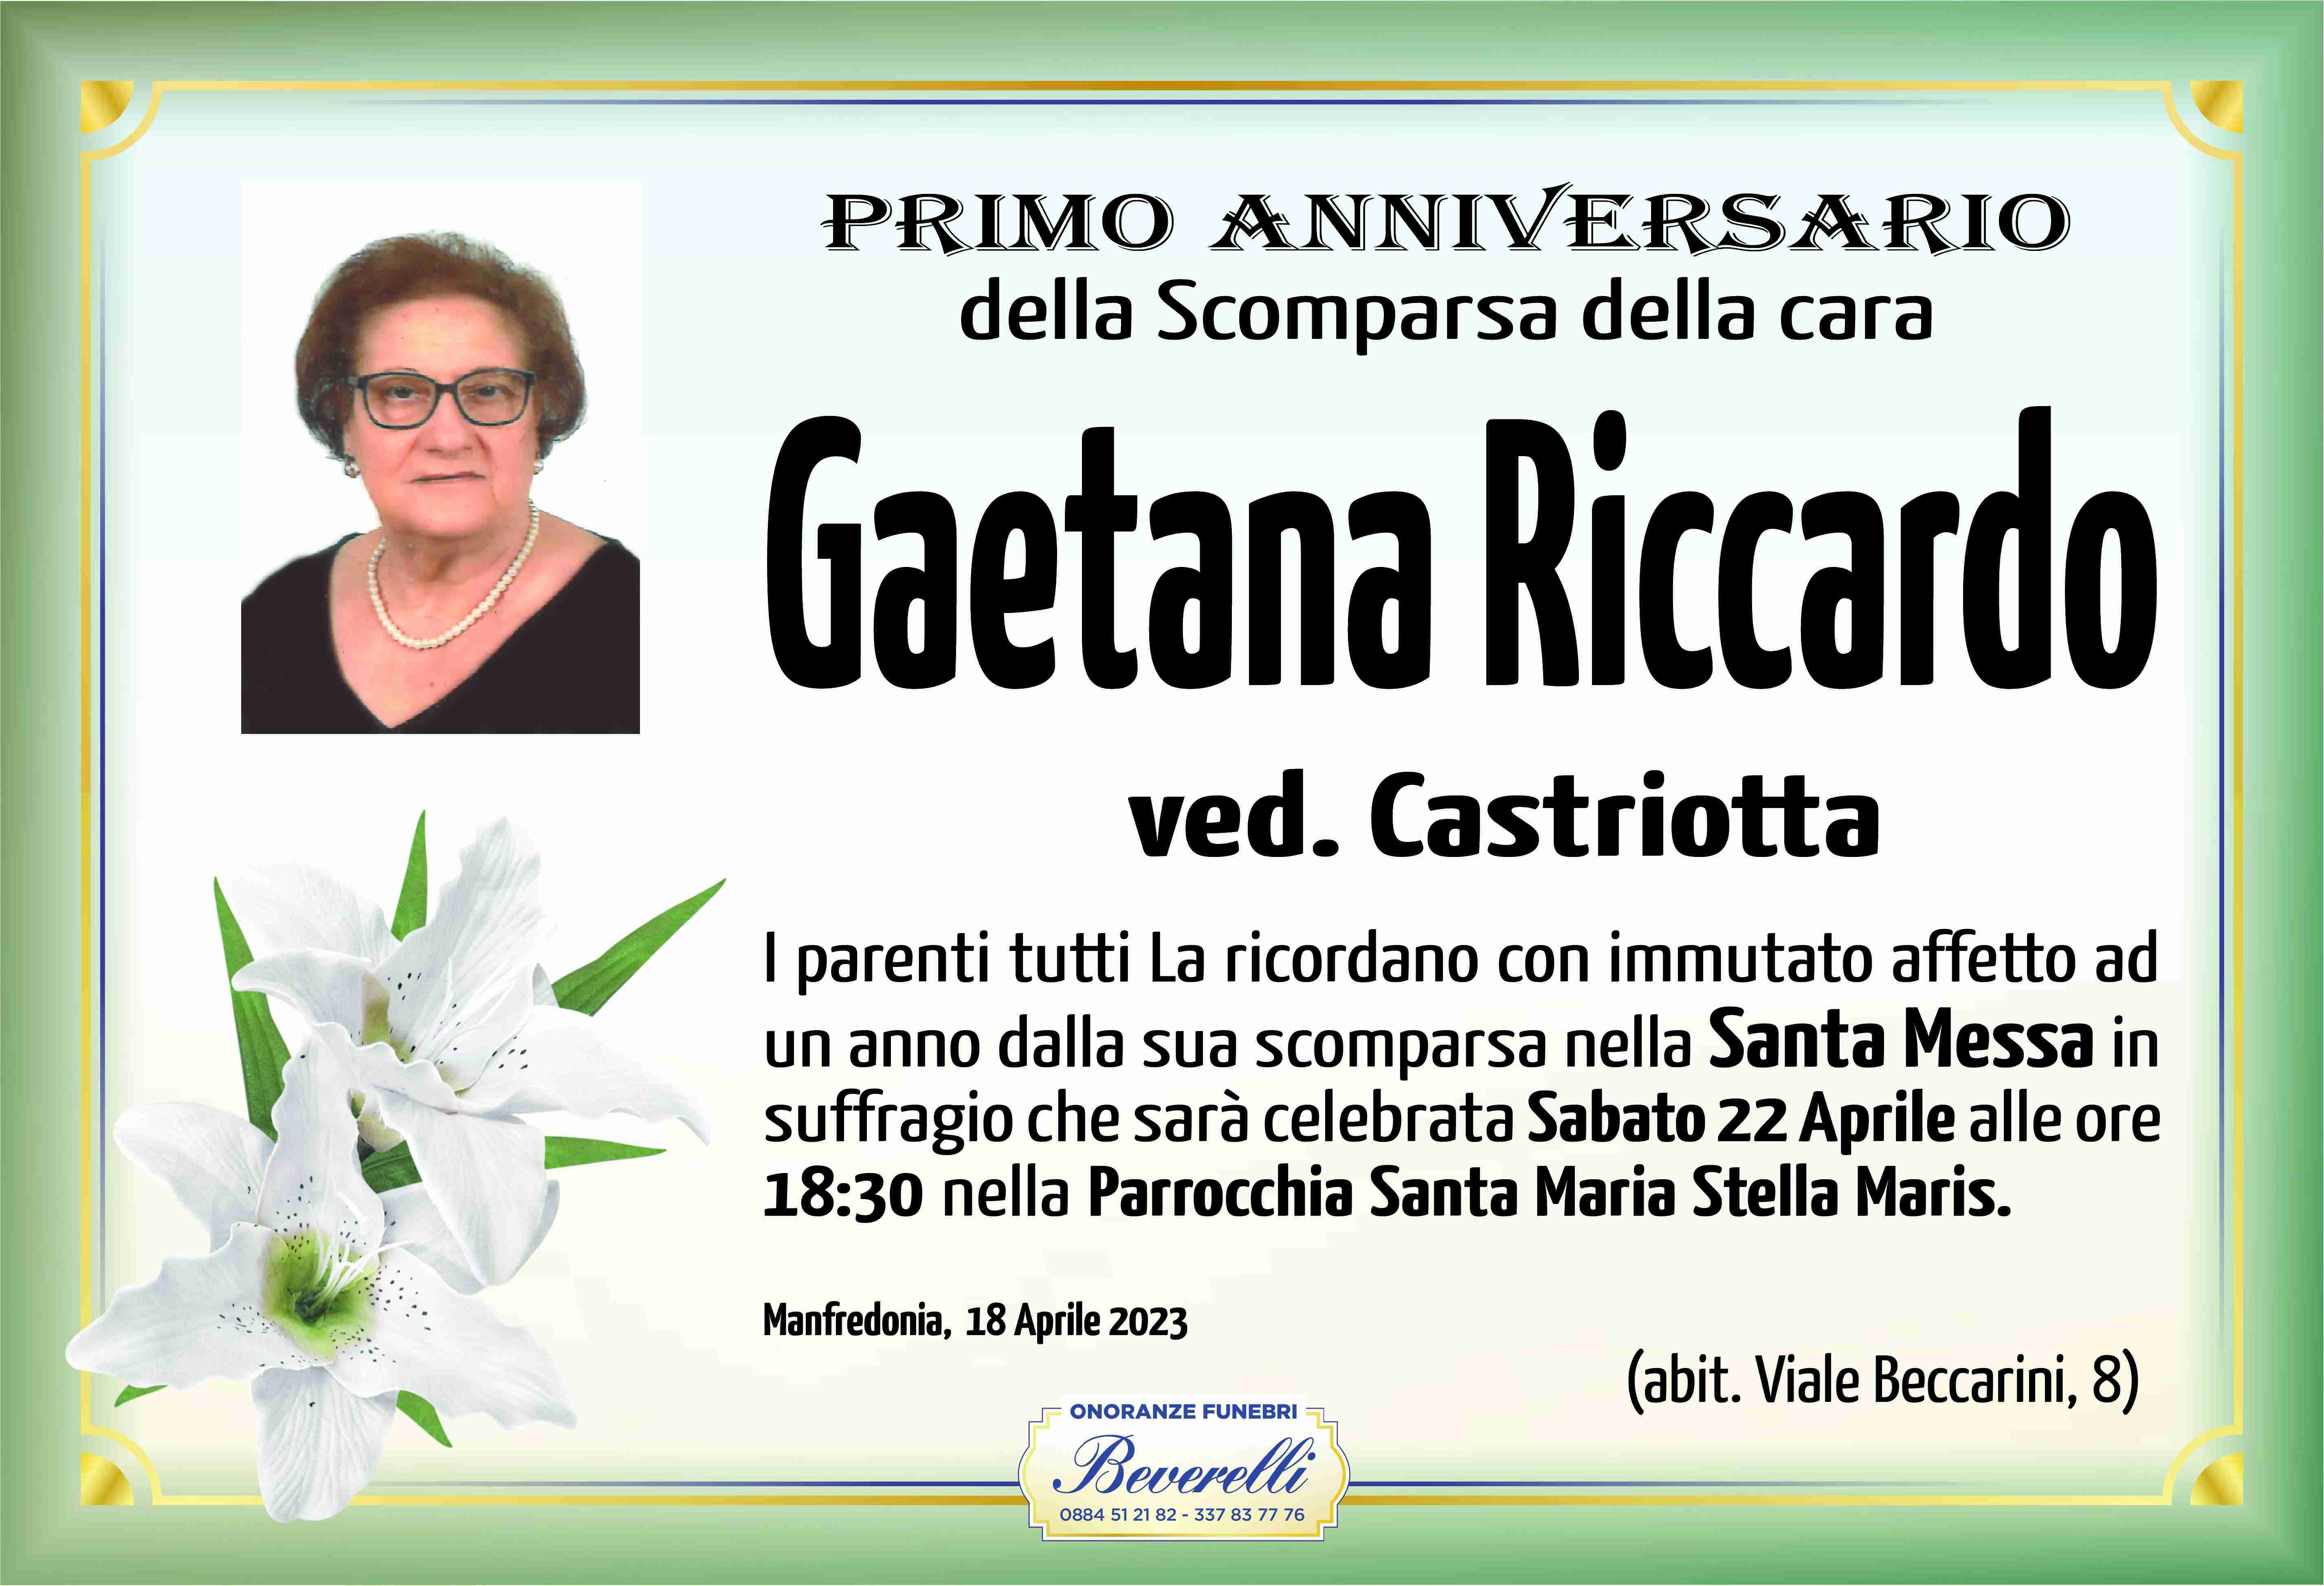 Gaetana Riccardo